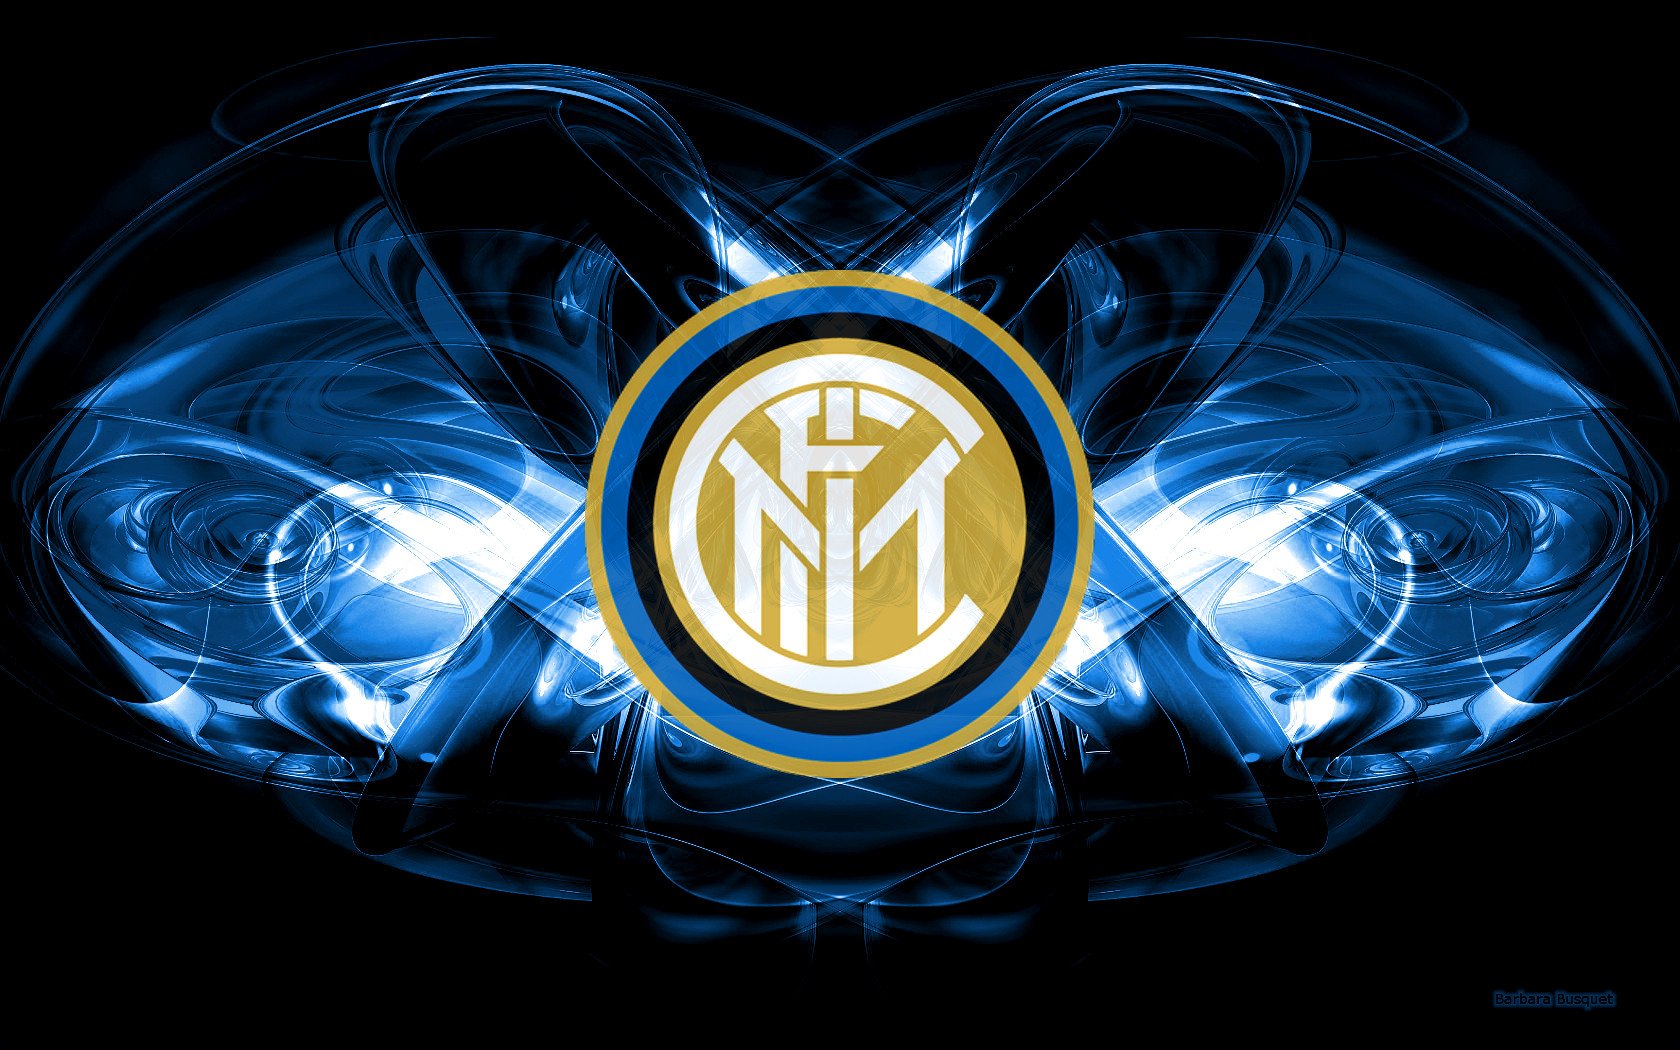 Inter vs Parma match day preveiw #192 – The Galleria Of Internazionale